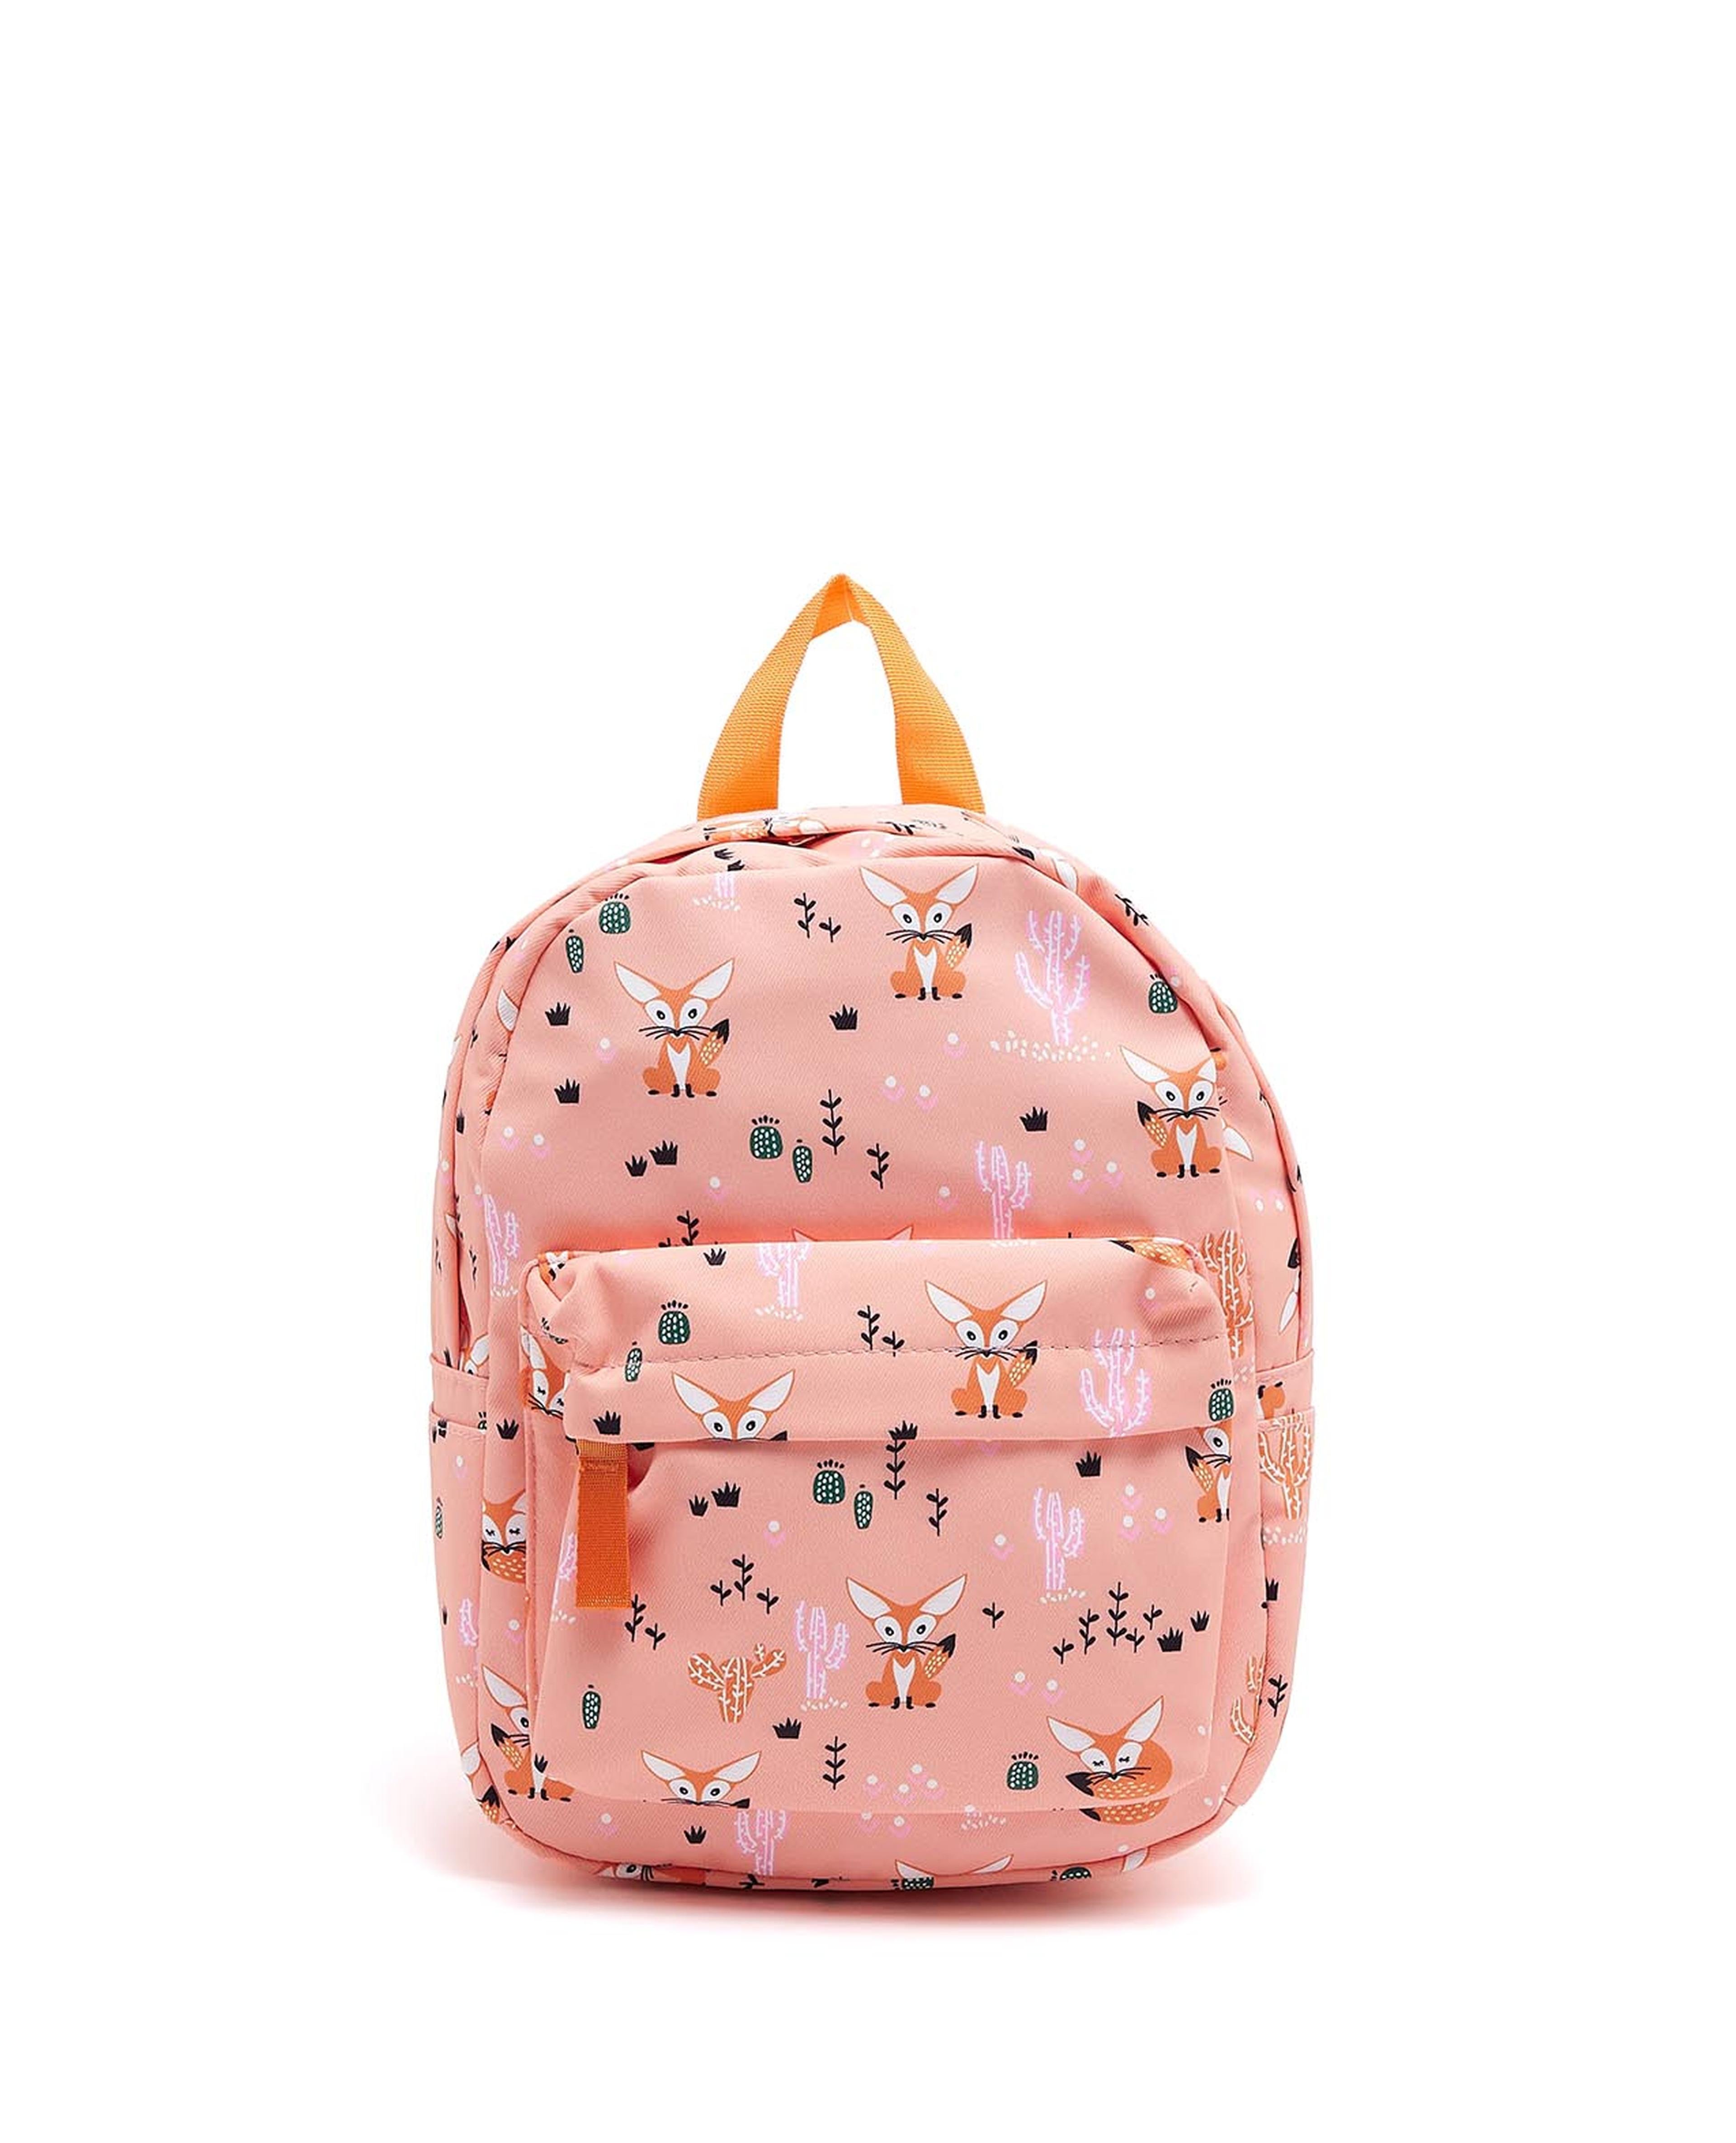 Fox Printed School Backpack